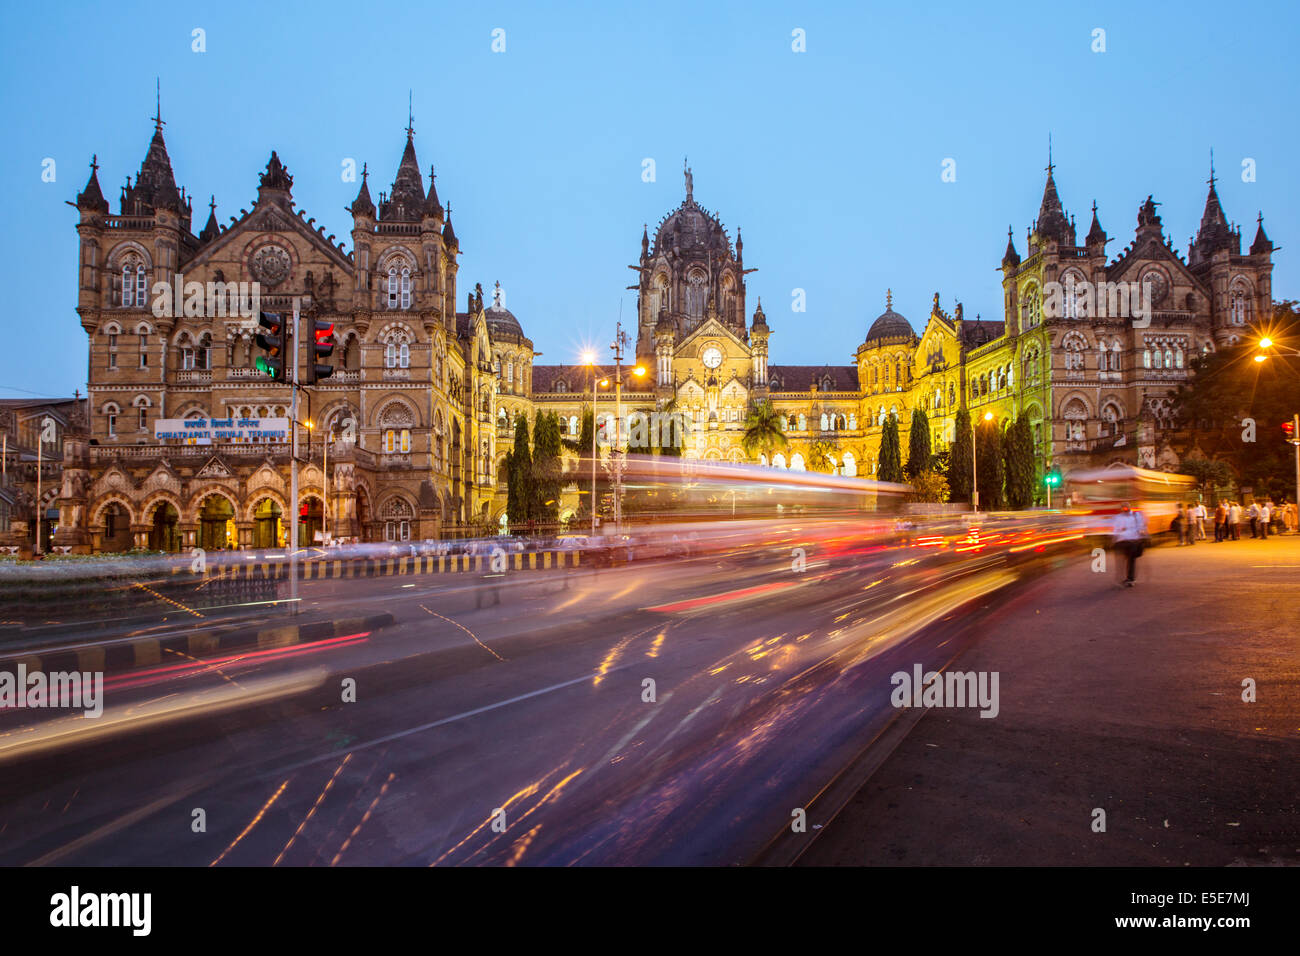 La gare Chhatrapati Shivaji, autrefois Victoria Terminus à l'heure de pointe, centre de Bombay, Inde Banque D'Images